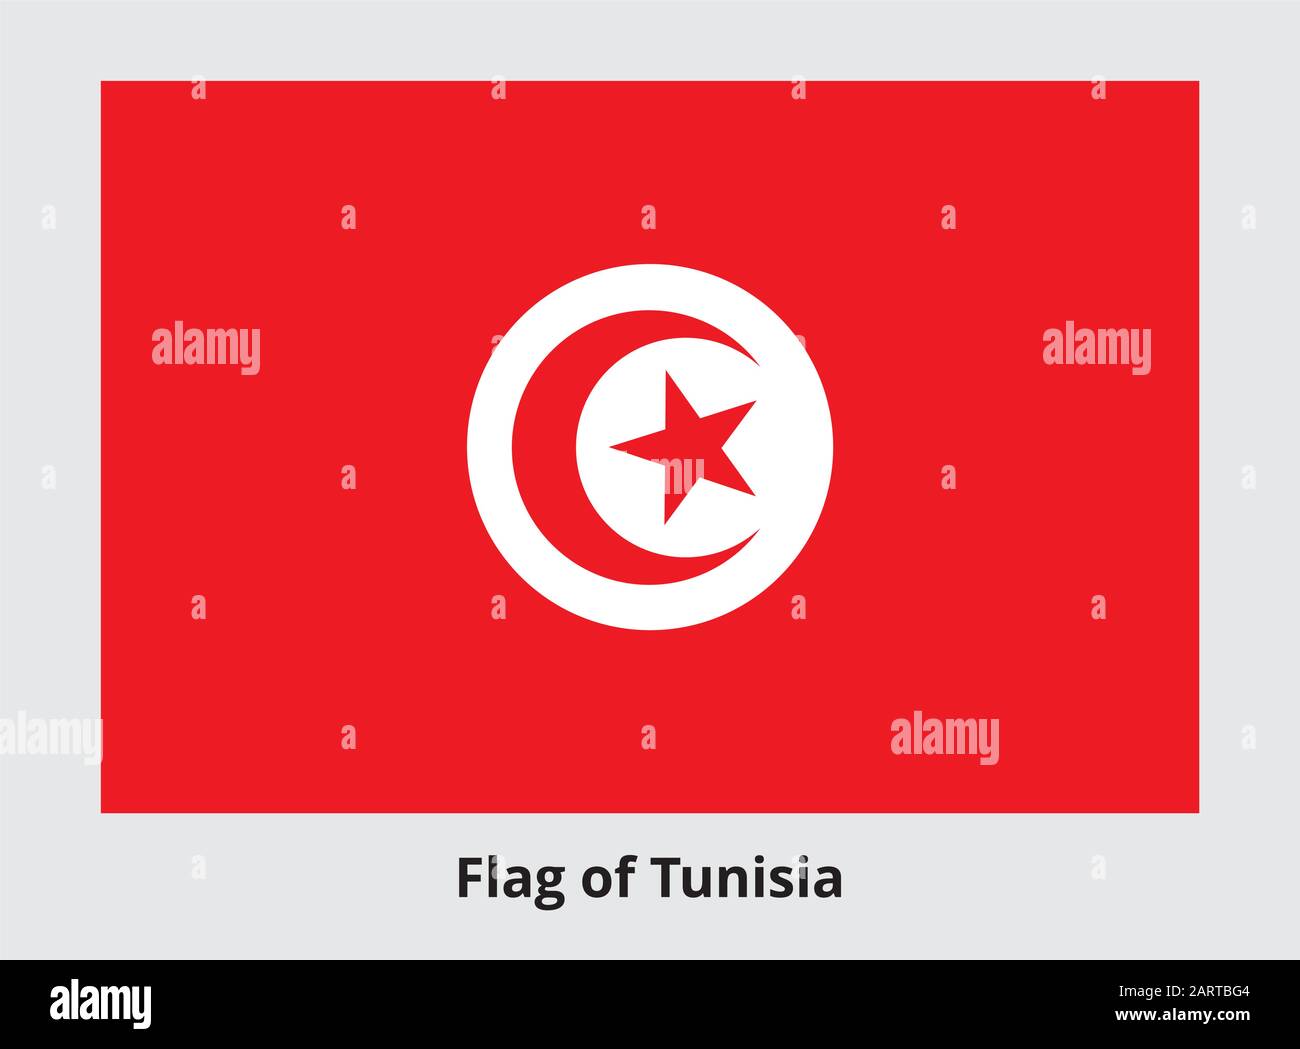 Bandera de Túnez. Bandera rectangular con media luna alrededor de una estrella de cinco puntas en el centro. Símbolo de estado tunecino. Colores y proporciones adecuados. V Ilustración del Vector